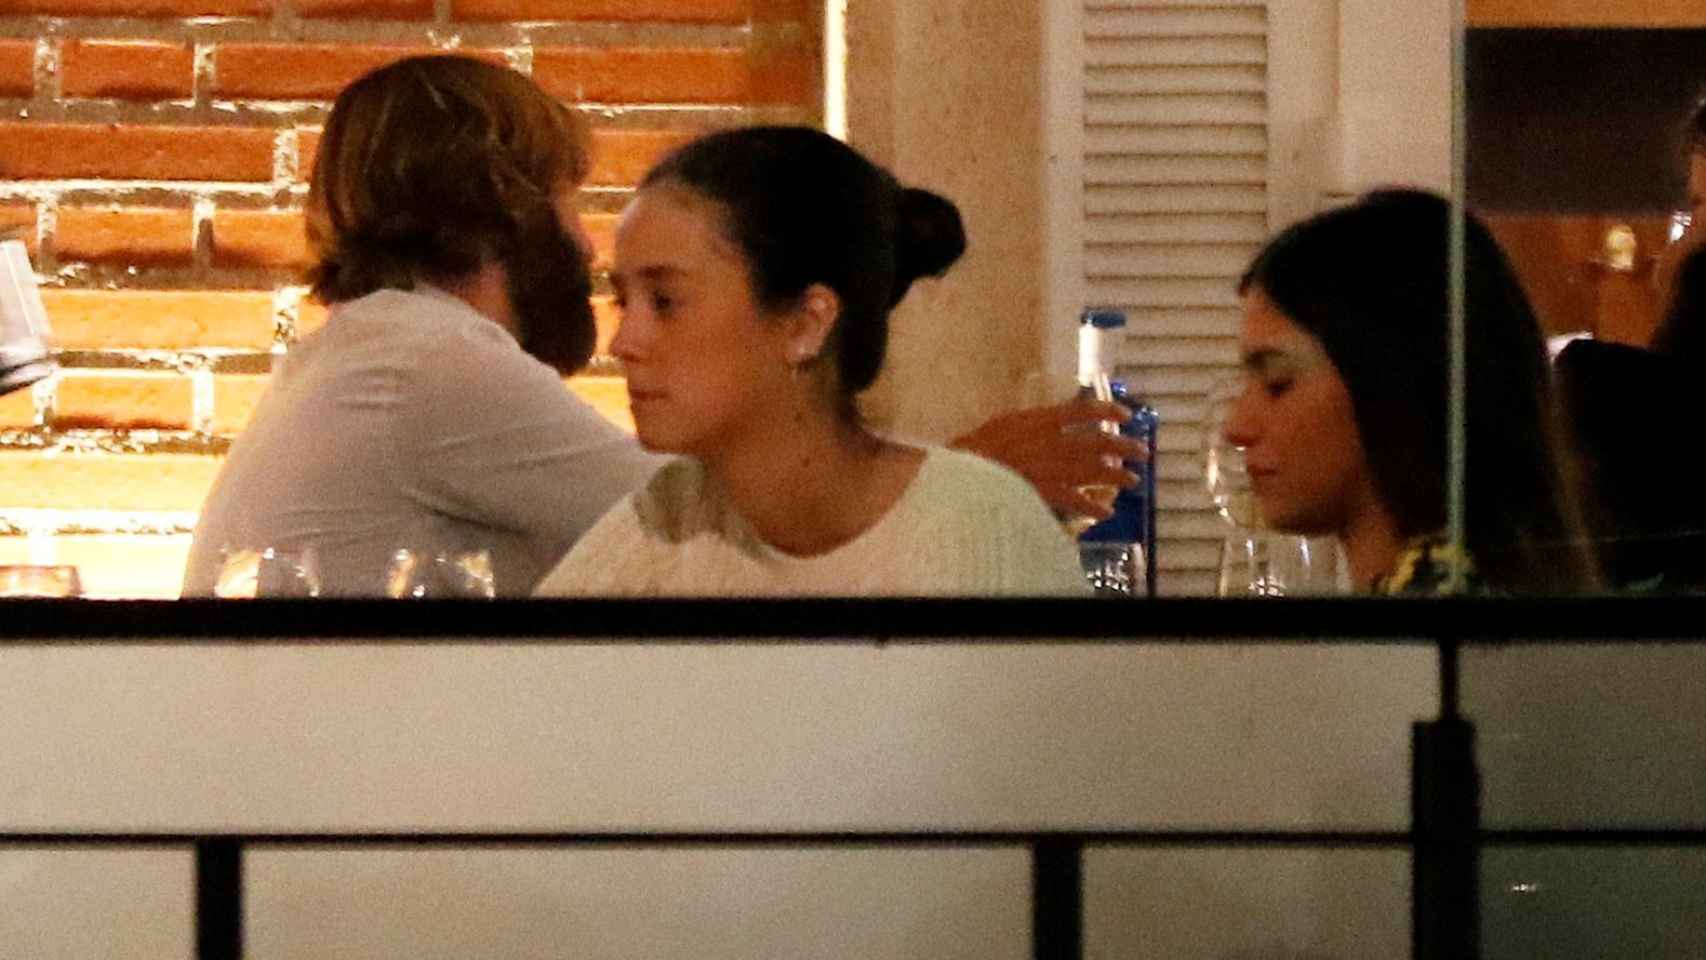 Victoria Federica cenando junto a sus amigos.